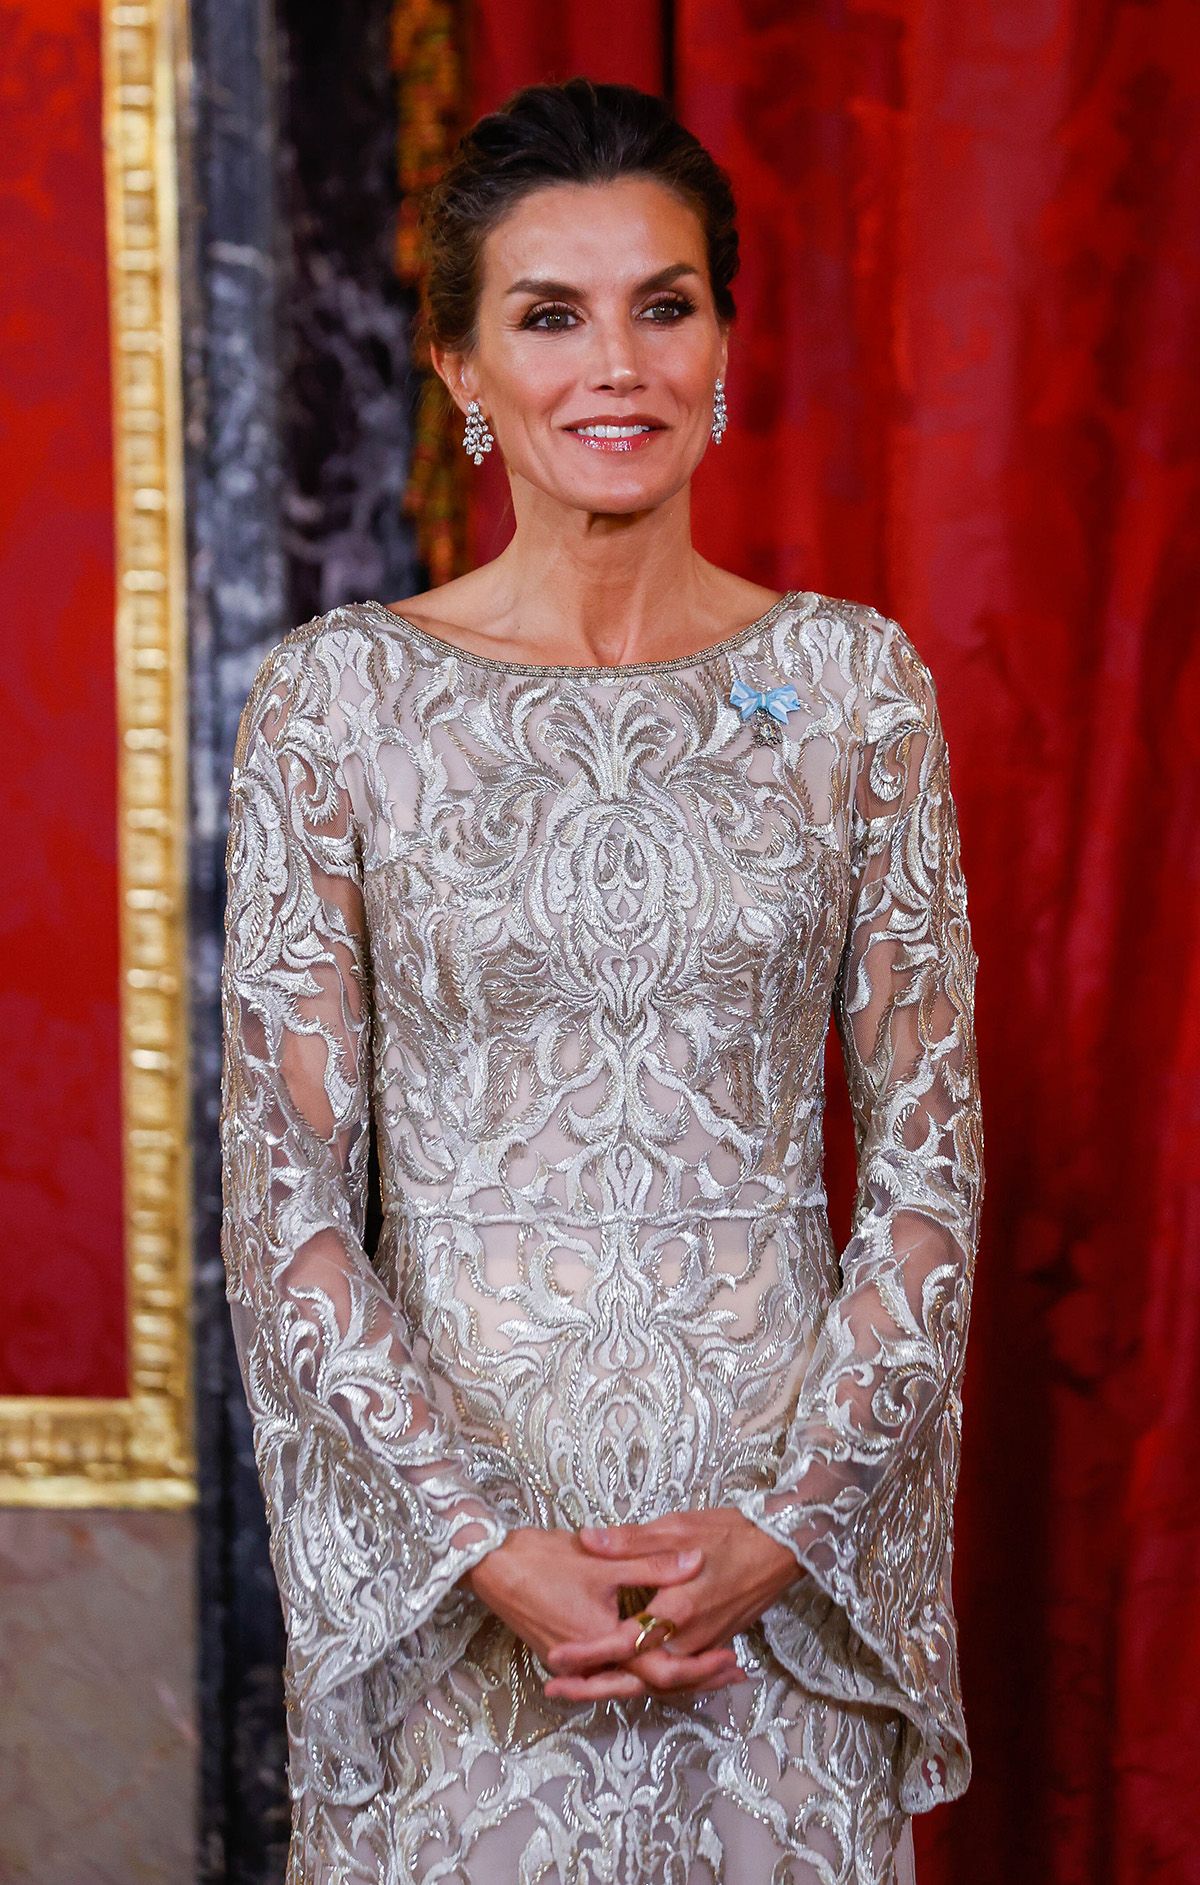 cooperar Maestro recursos humanos La reina Letizia: vestido dorado en la cena de Gala en Palacio